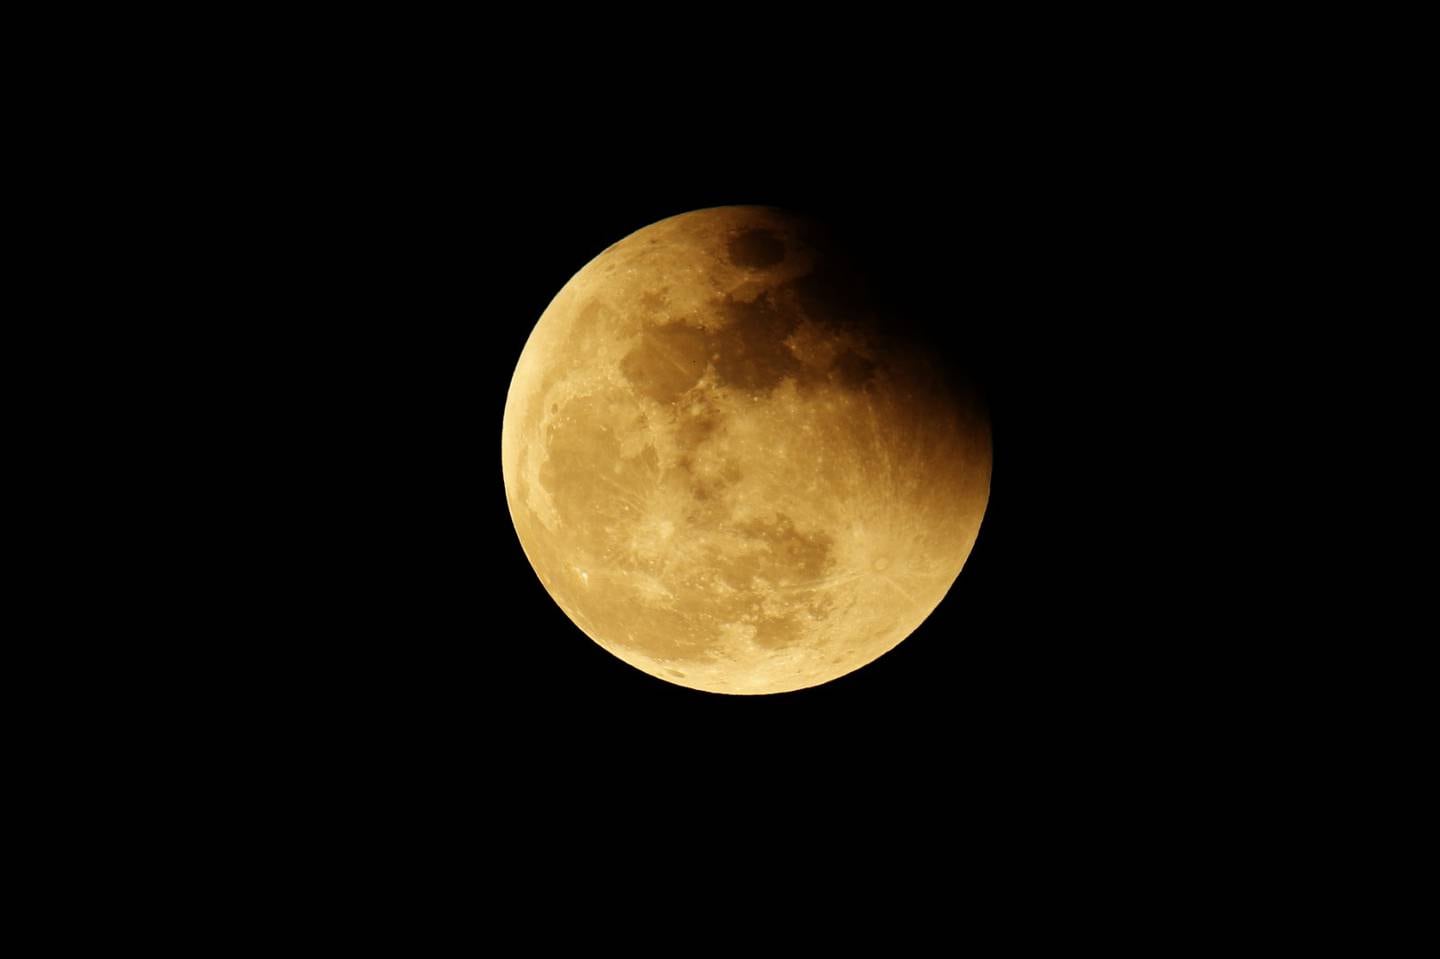 Un eclipse lunar penumbral se presenta cuando la luna pasa por la penumbra de la Tierra: la parte más externa de su sombra. Fotografía: Shutterstock.